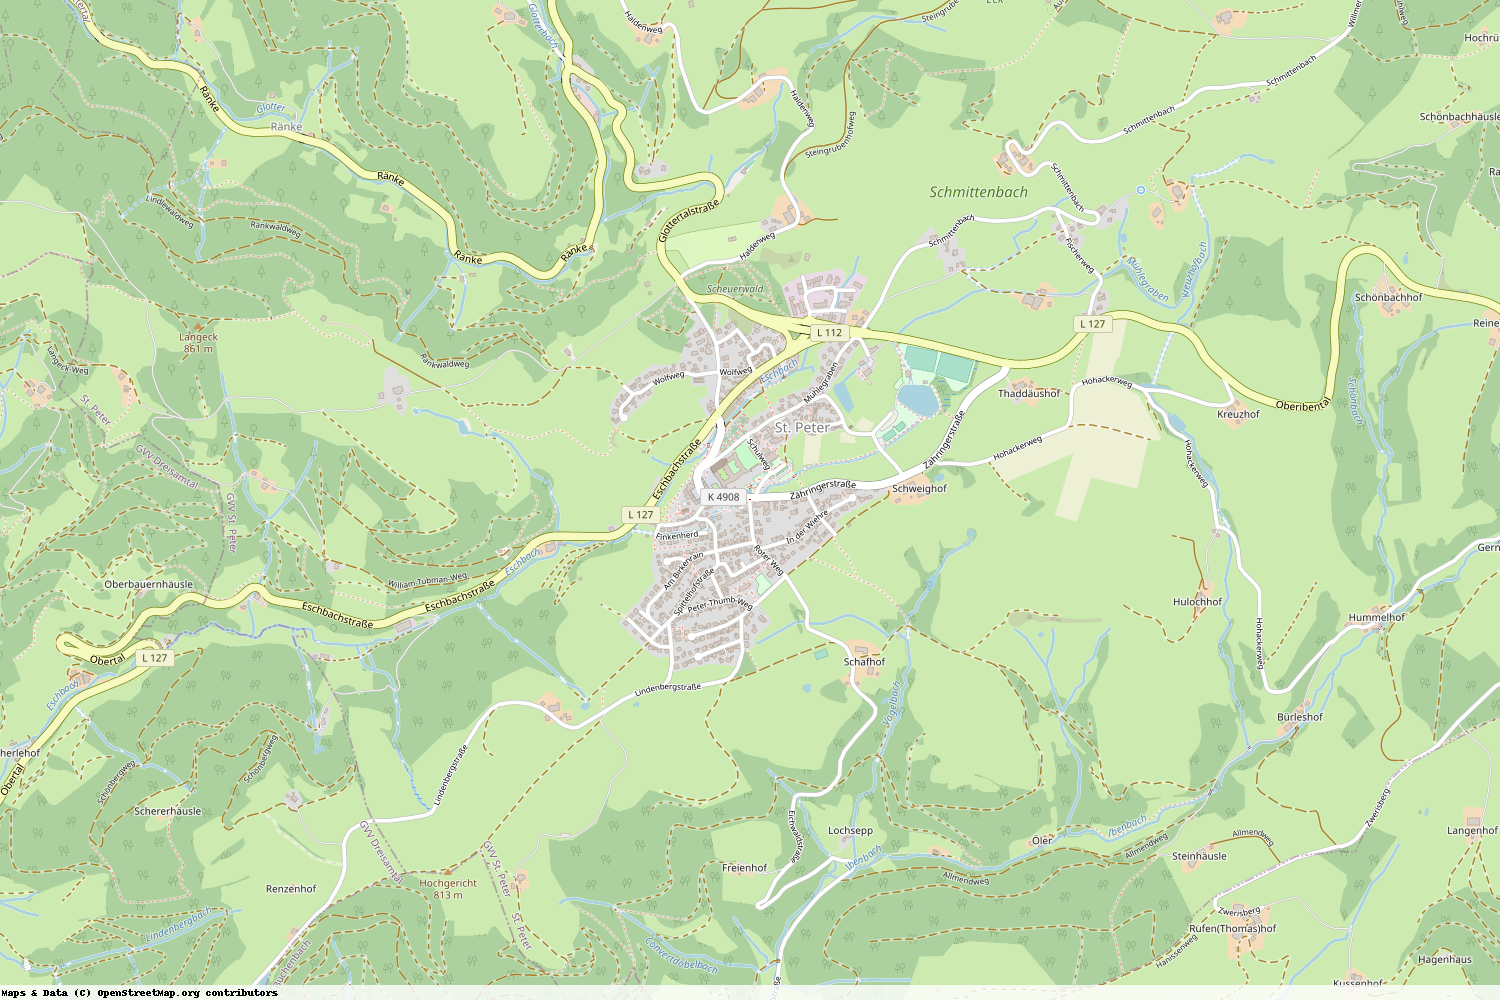 Ist gerade Stromausfall in Baden-Württemberg - Breisgau-Hochschwarzwald - St. Peter?